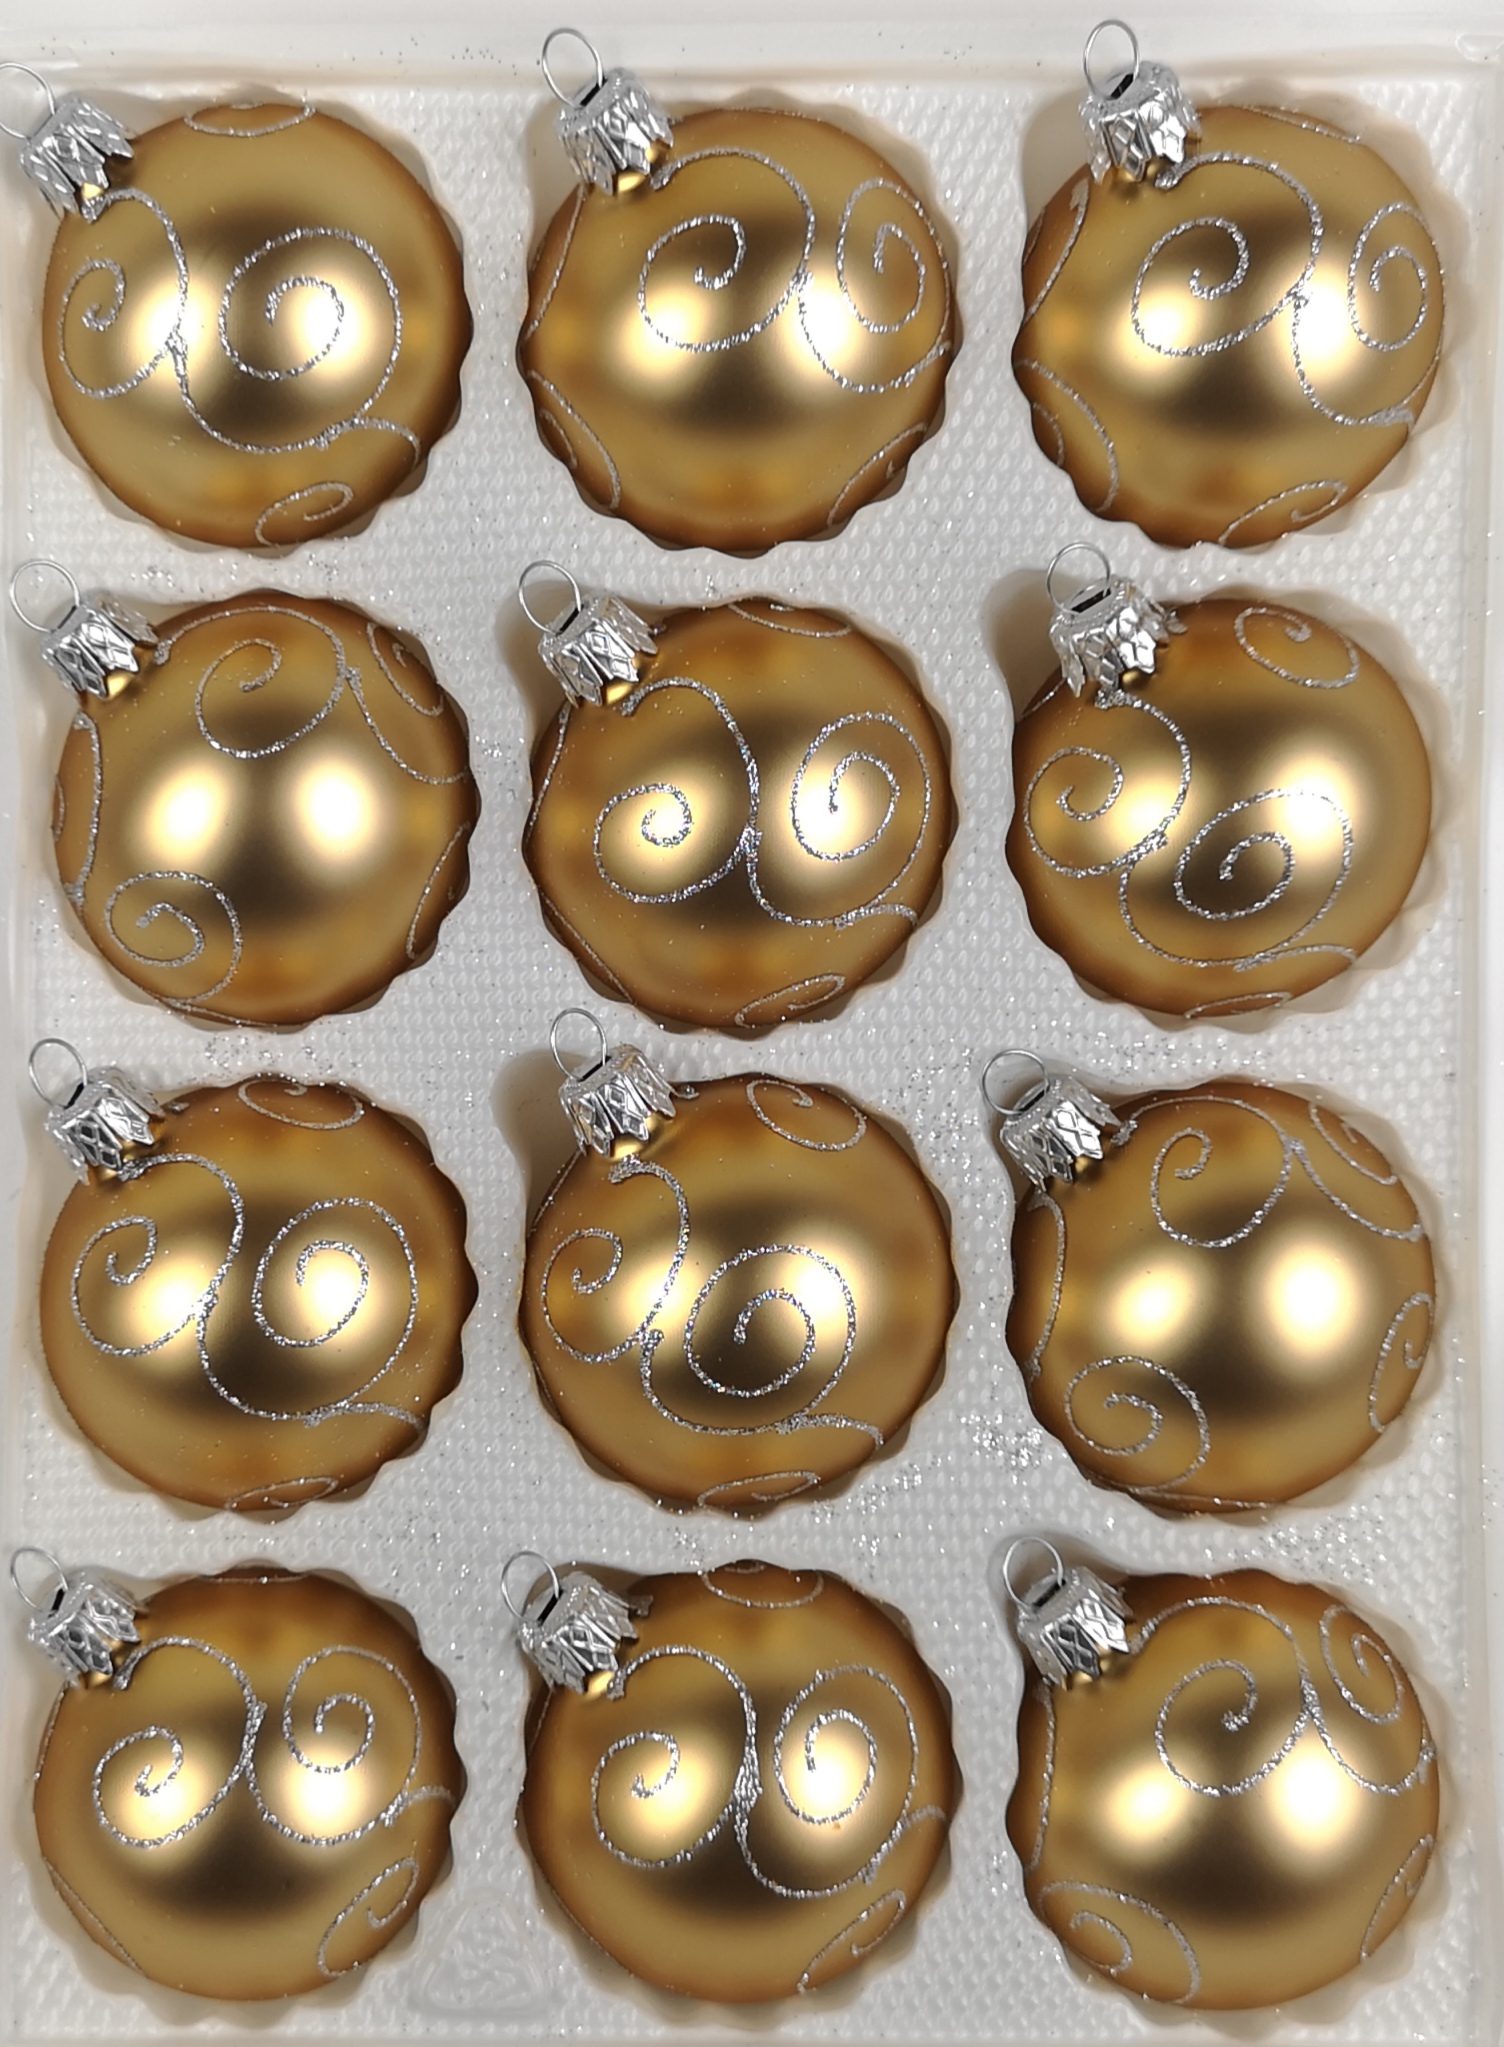 39 TLG Christbaumkugeln Weihnachtsschmuck-Christbaumschmuck NEU Glas-Weihnachtskugeln Set in Hochglanz Vintage Gold